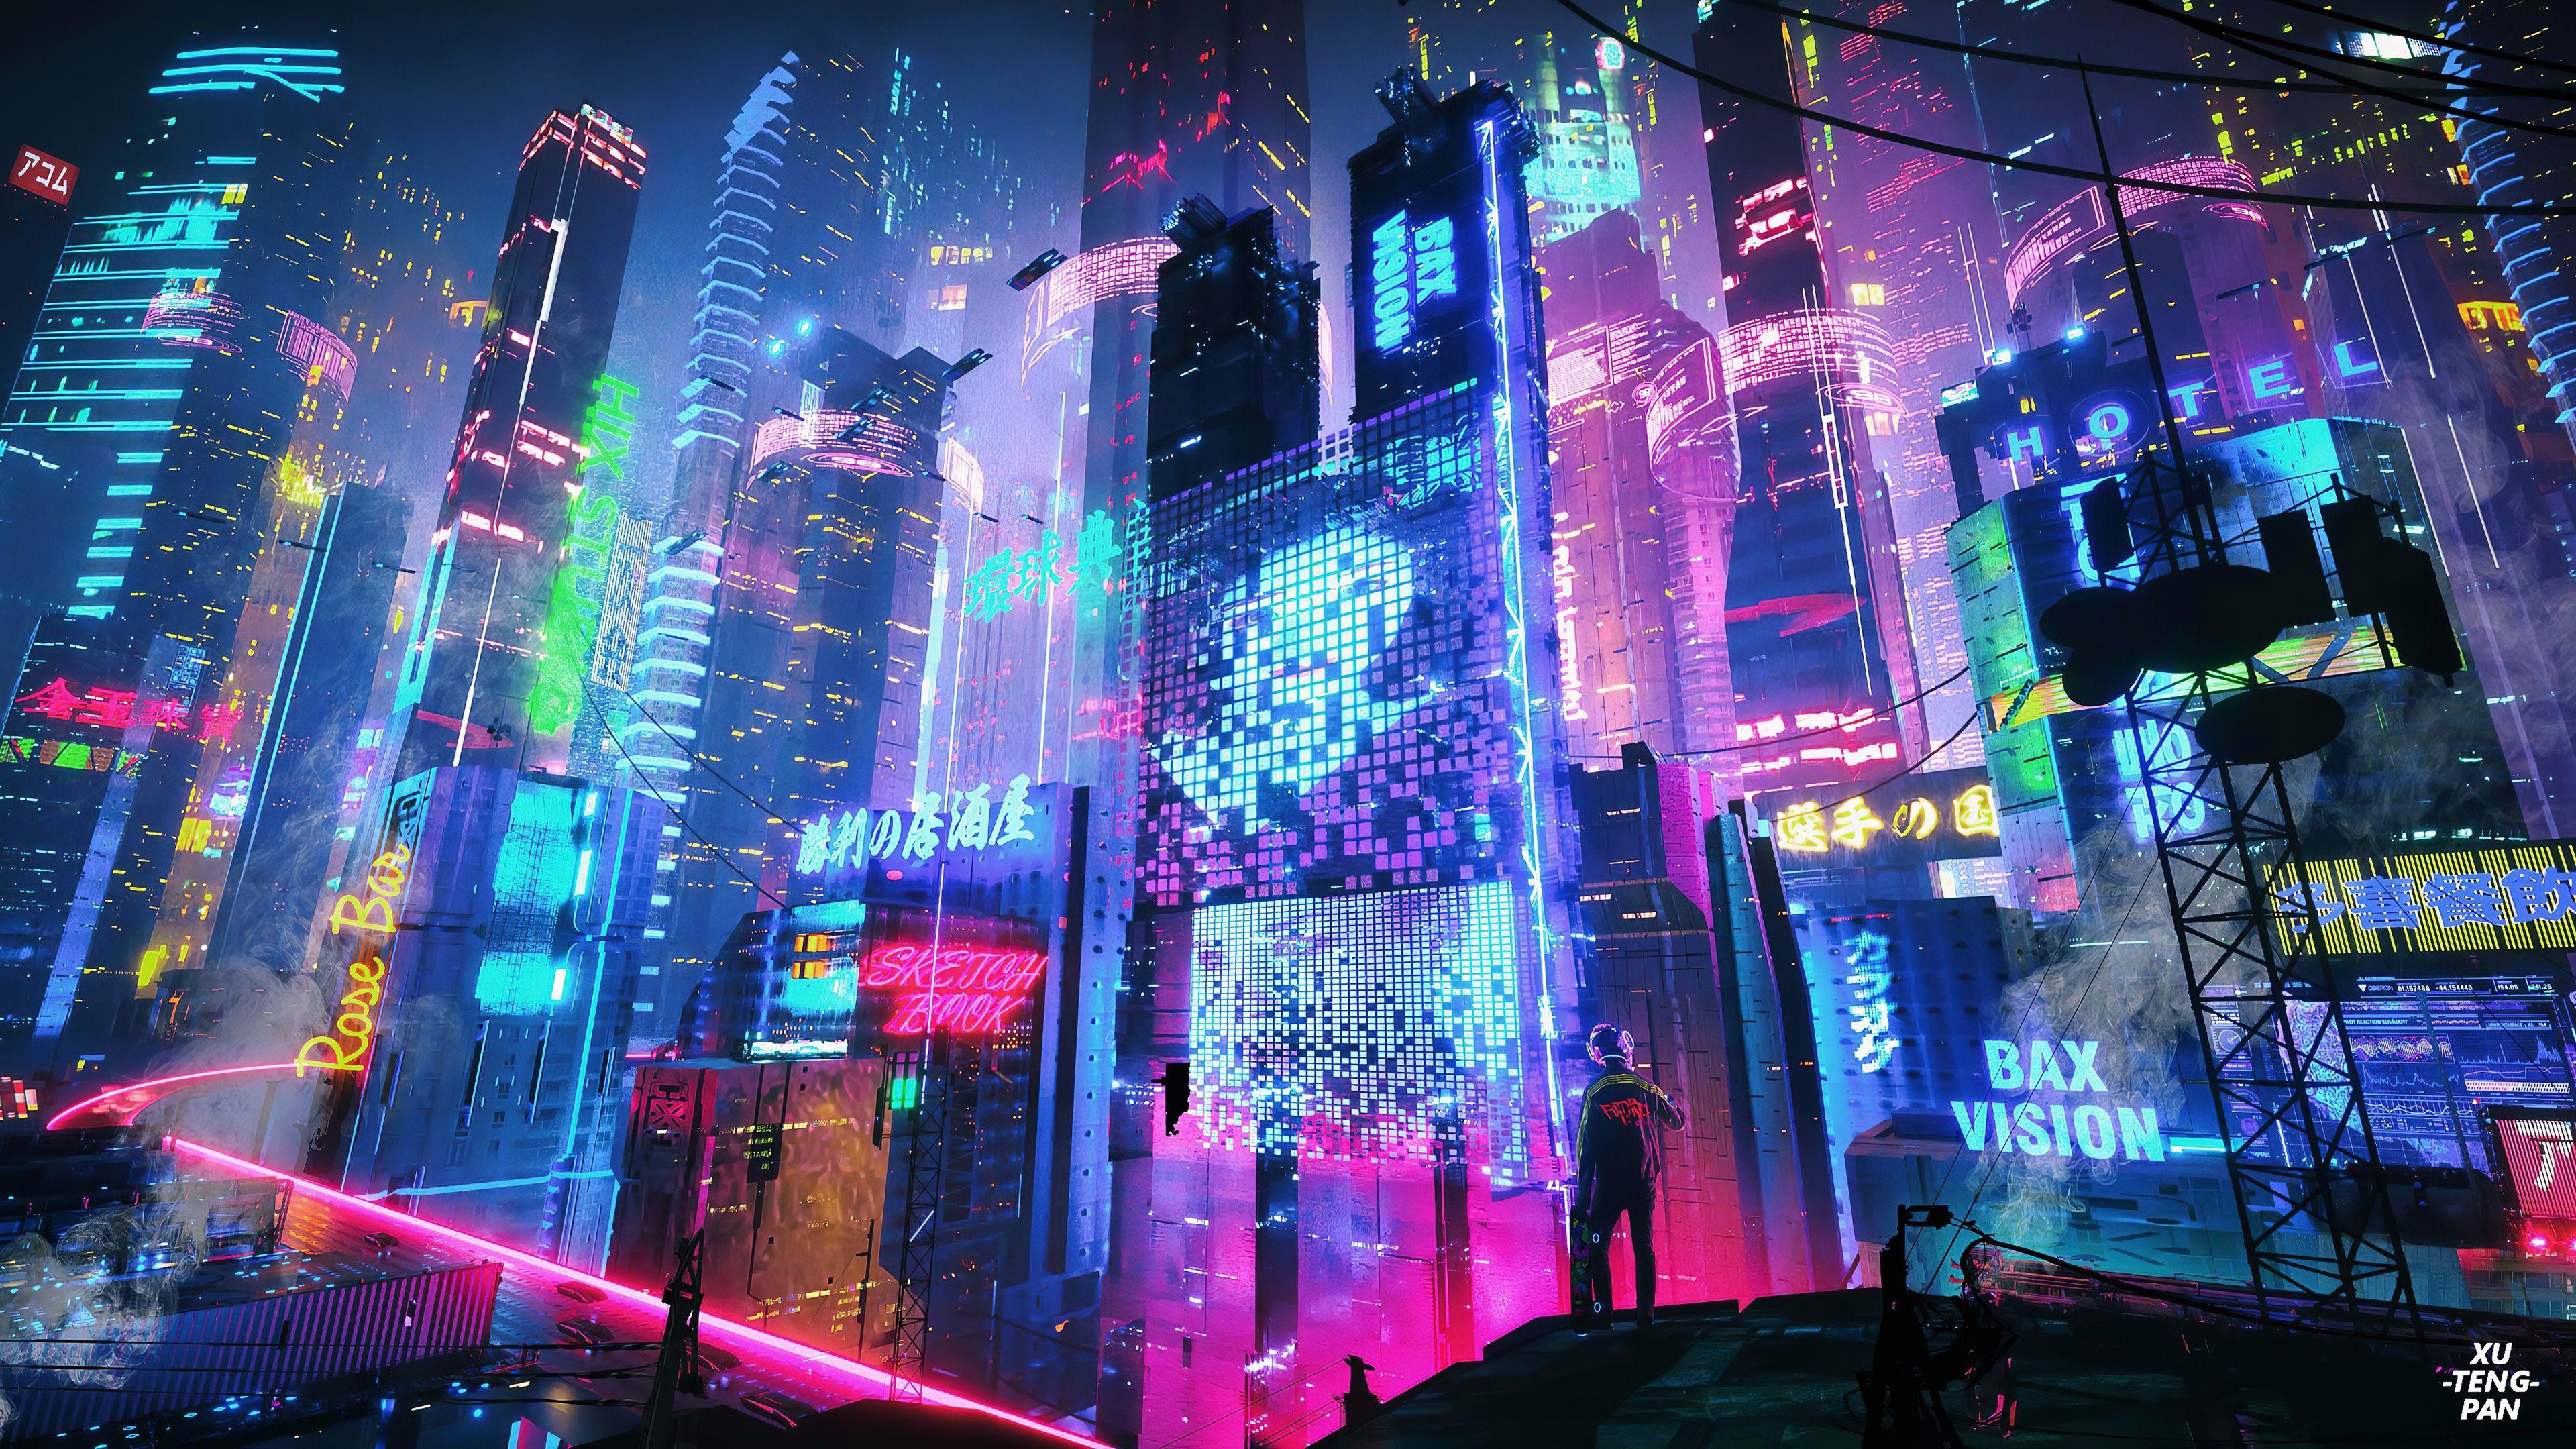 Hình nền  Cyberpunk 2077 khoa học viễn tưởng retro science fiction  Neon xe hơi Video Game Art Cô gái trò chơi điện tử 3840x2160   Kenhung1405  1585003  Hình nền đẹp hd  WallHere